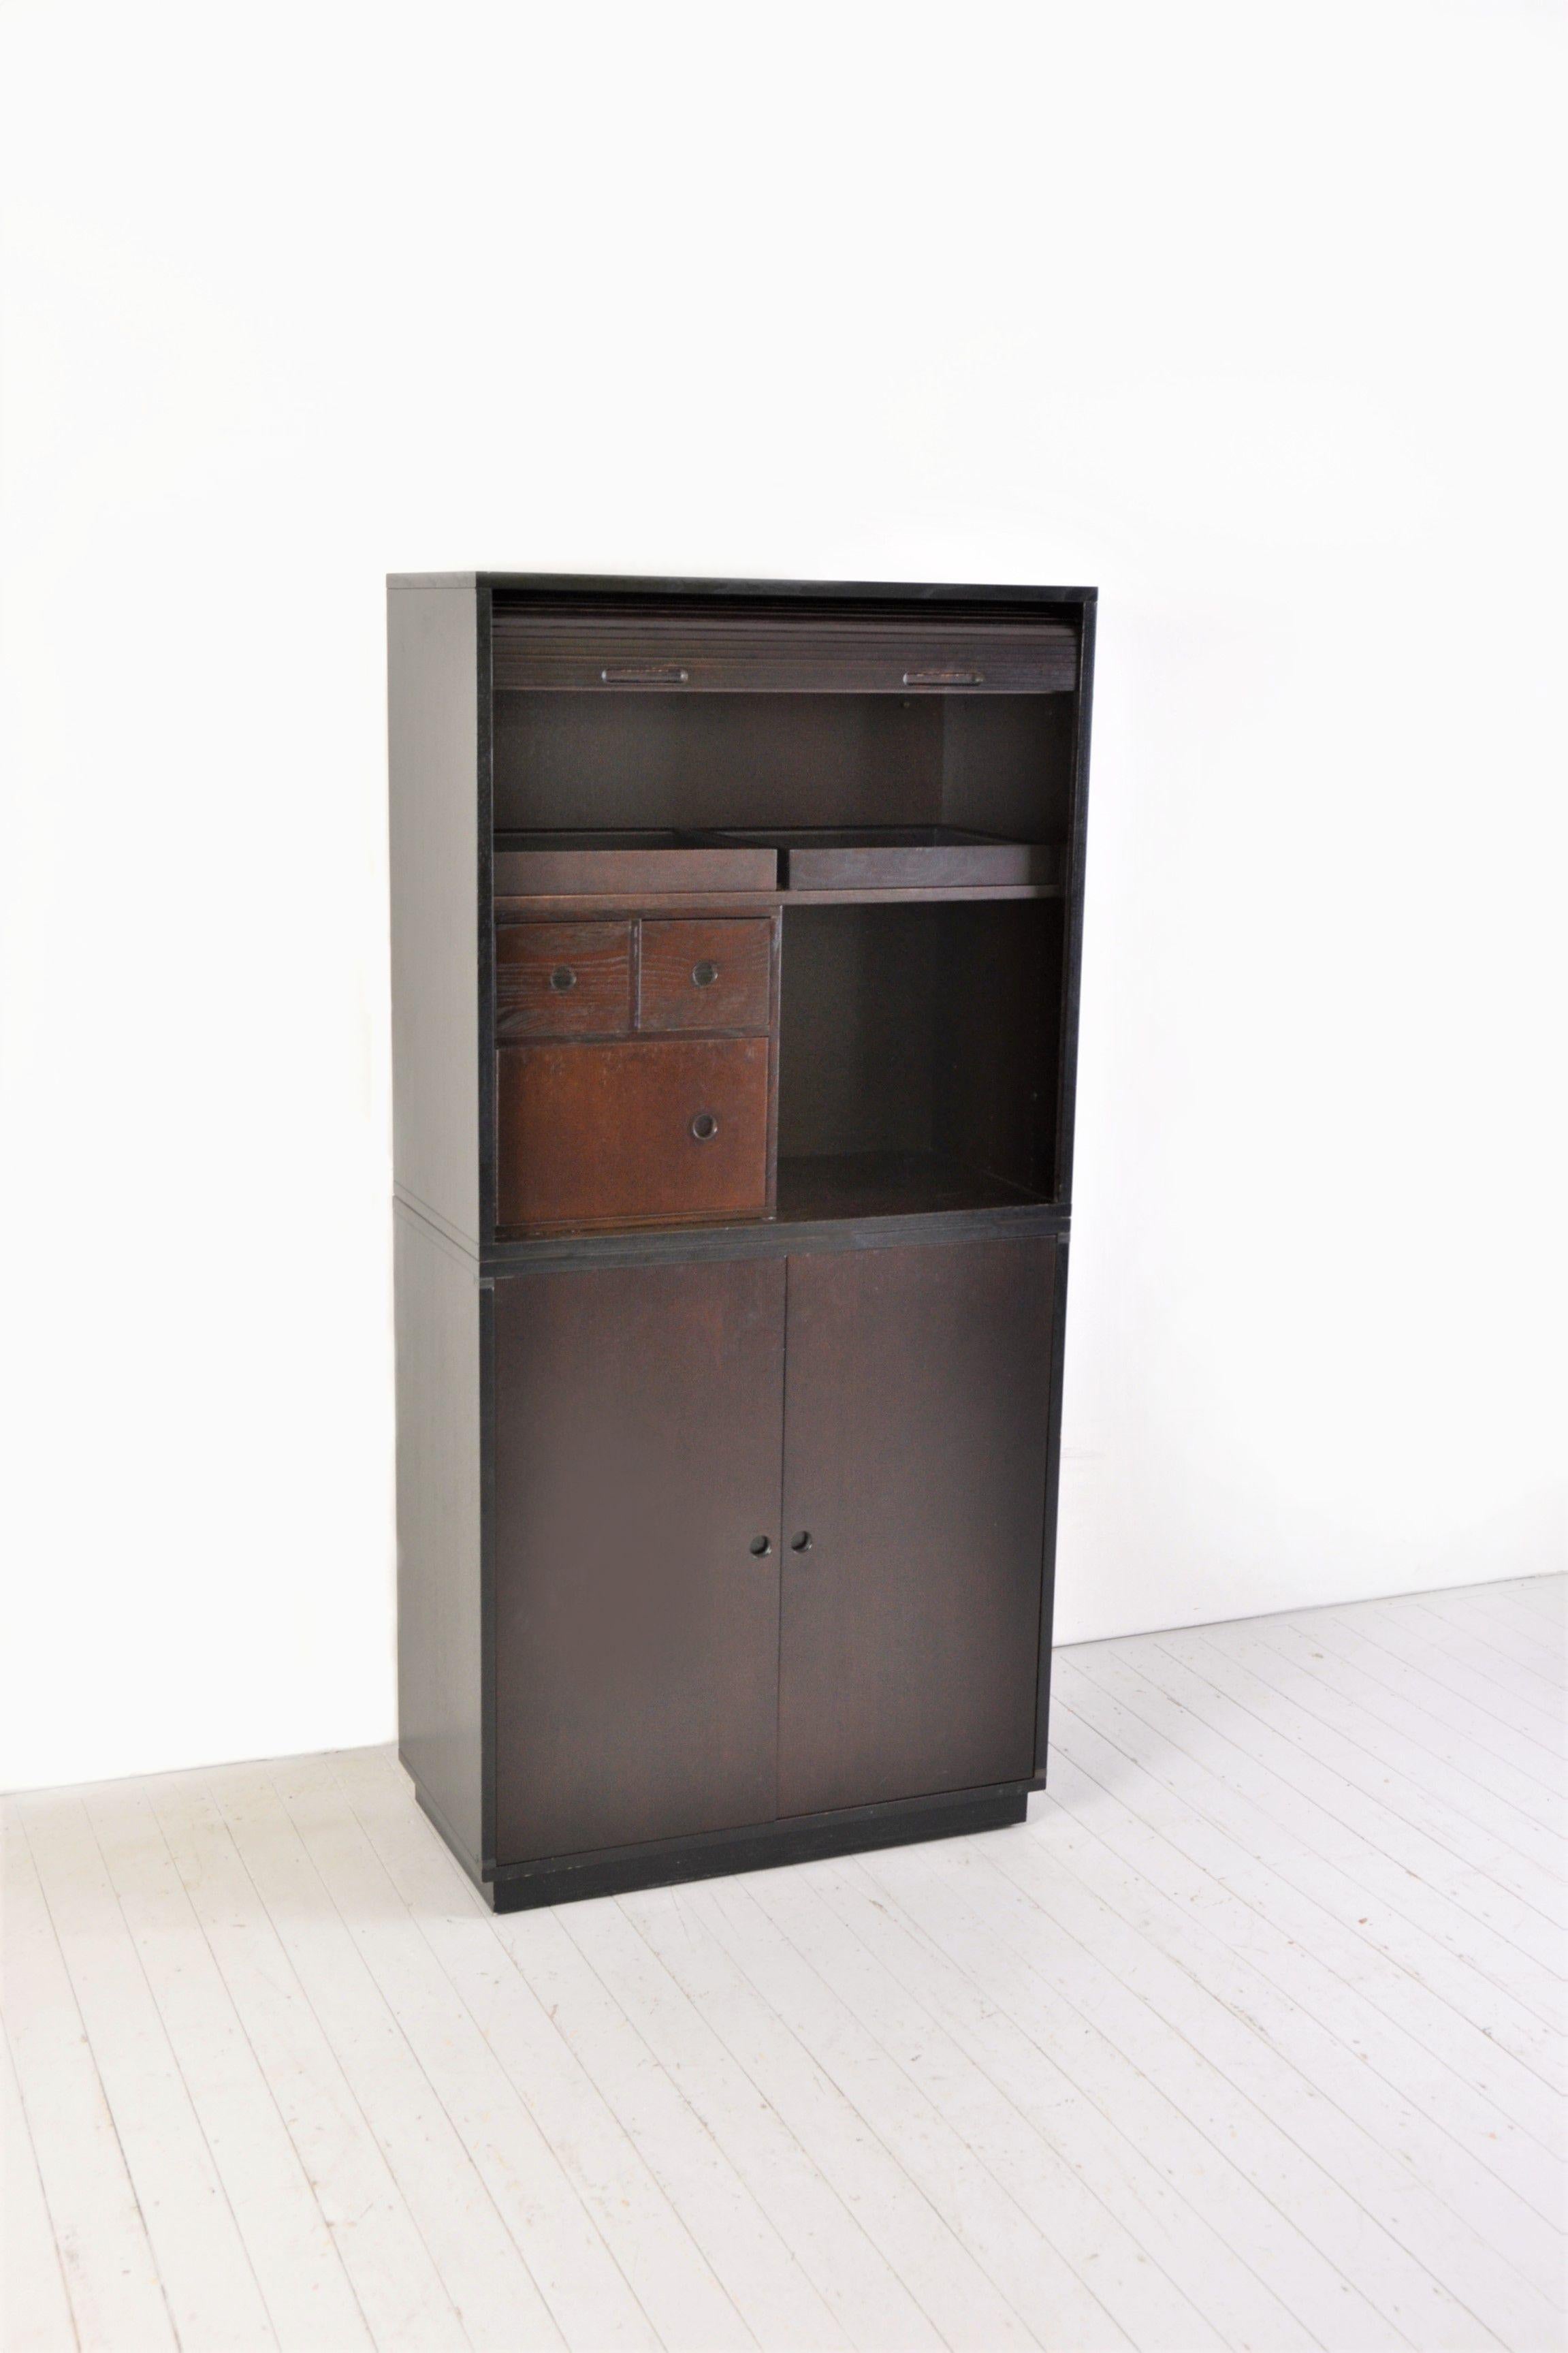 Très belle armoire modulaire, en marron et noir. cette variation de couleur est hors production. elle a été fabriquée en 1991.
Bon état.